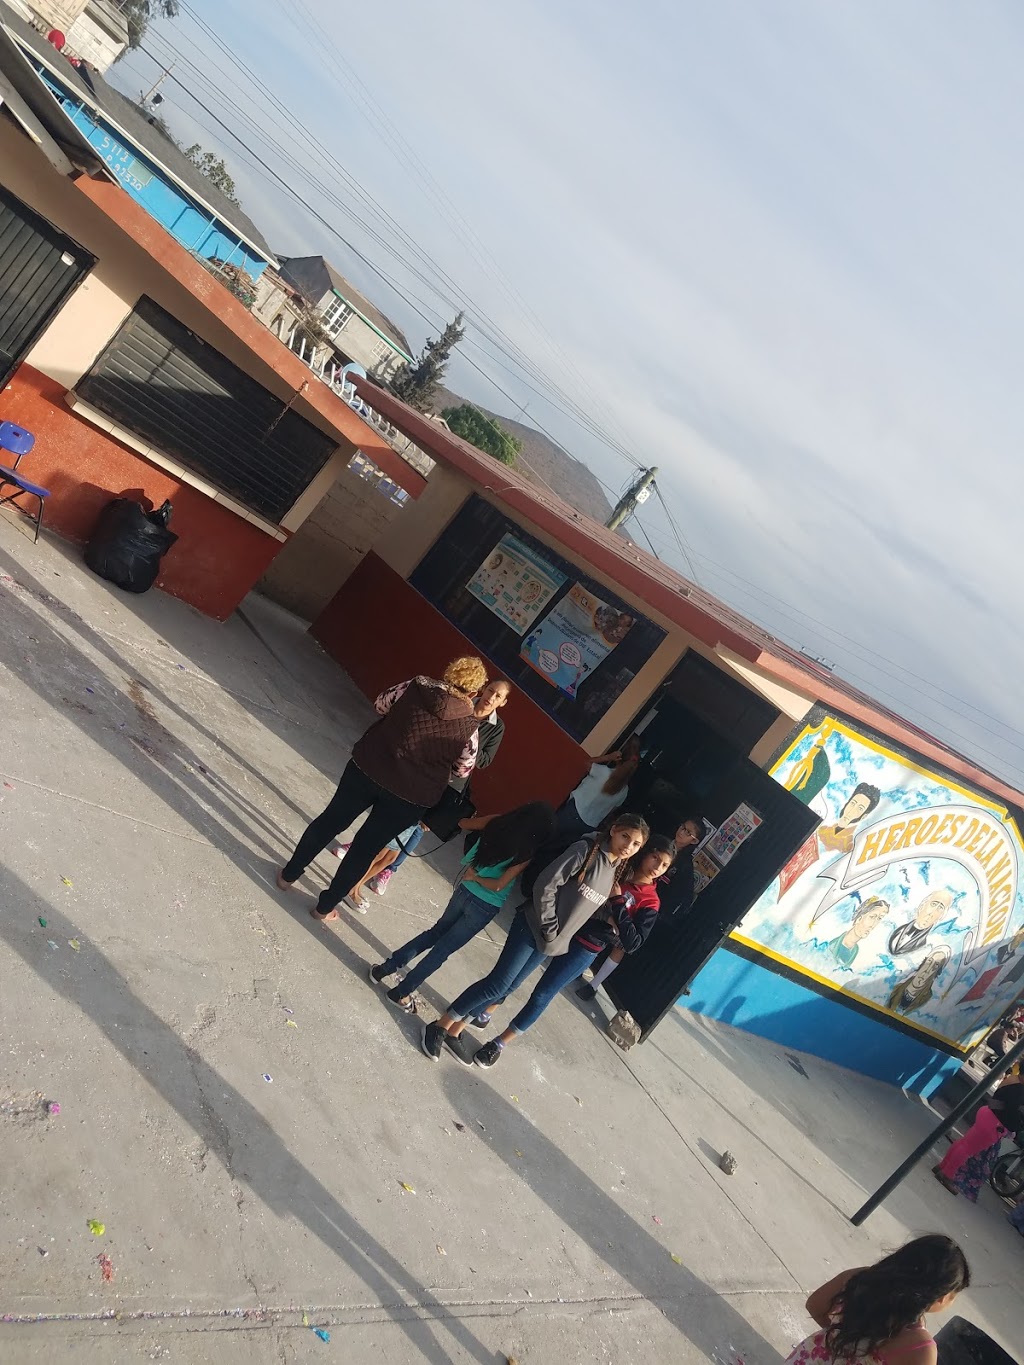 Escuela primaria Calafia | El Niño, Baja California, Redondo, Baja California, Mexico | Phone: 664 103 0349